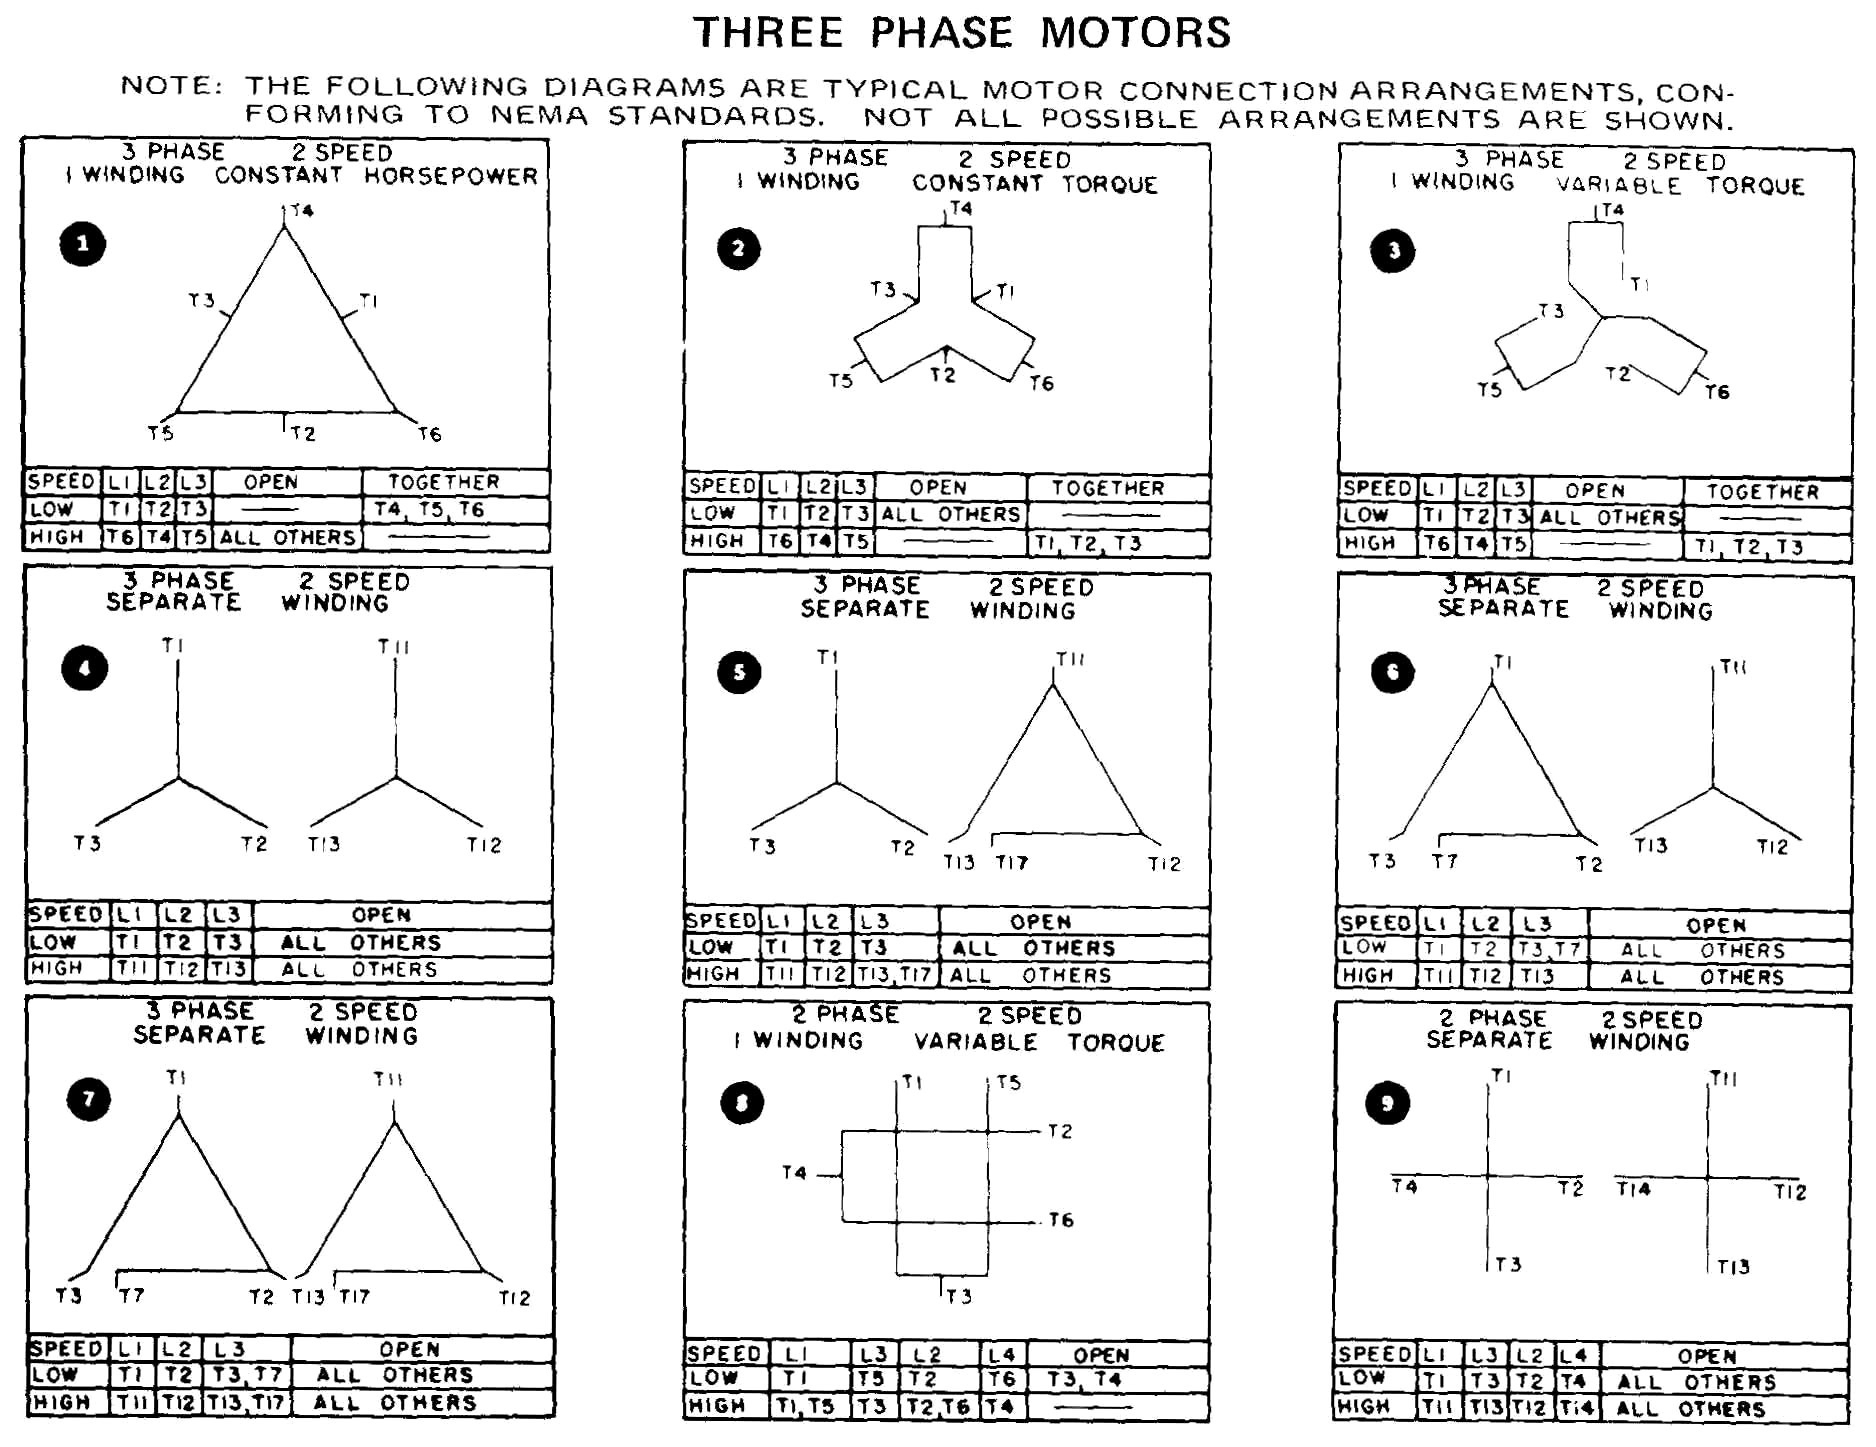 3 Phase Motor Wiring Diagram 12 Leads | Free Wiring Diagram - 3 Phase Motor Wiring Diagram 9 Leads